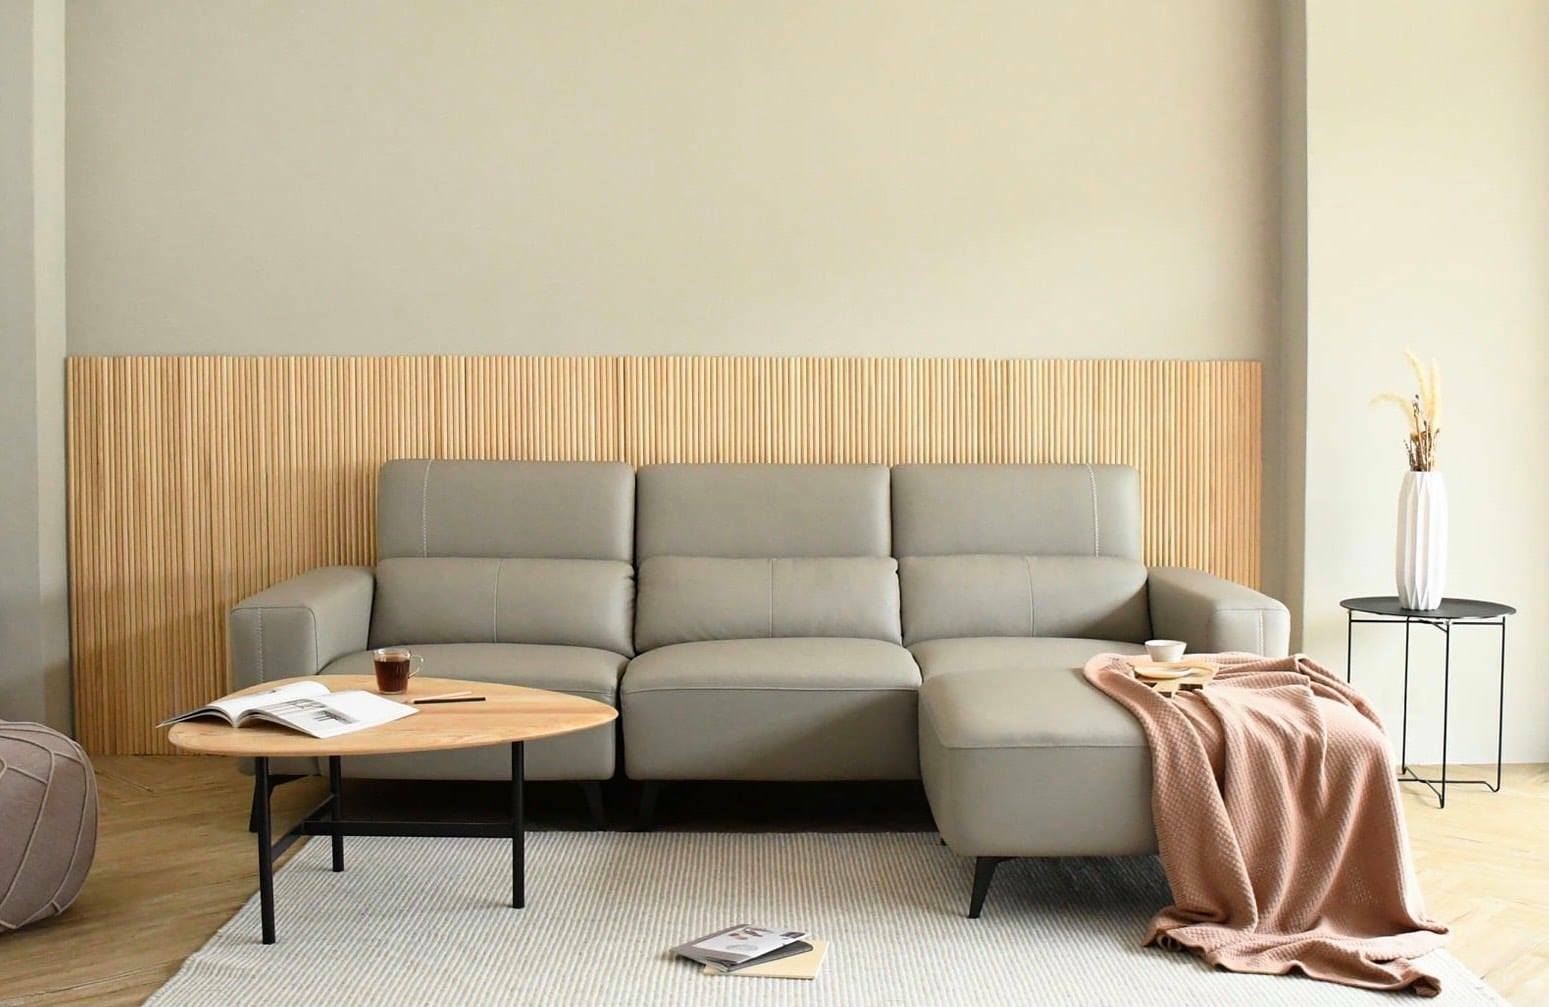 沙發尺寸、材質會影響坐感